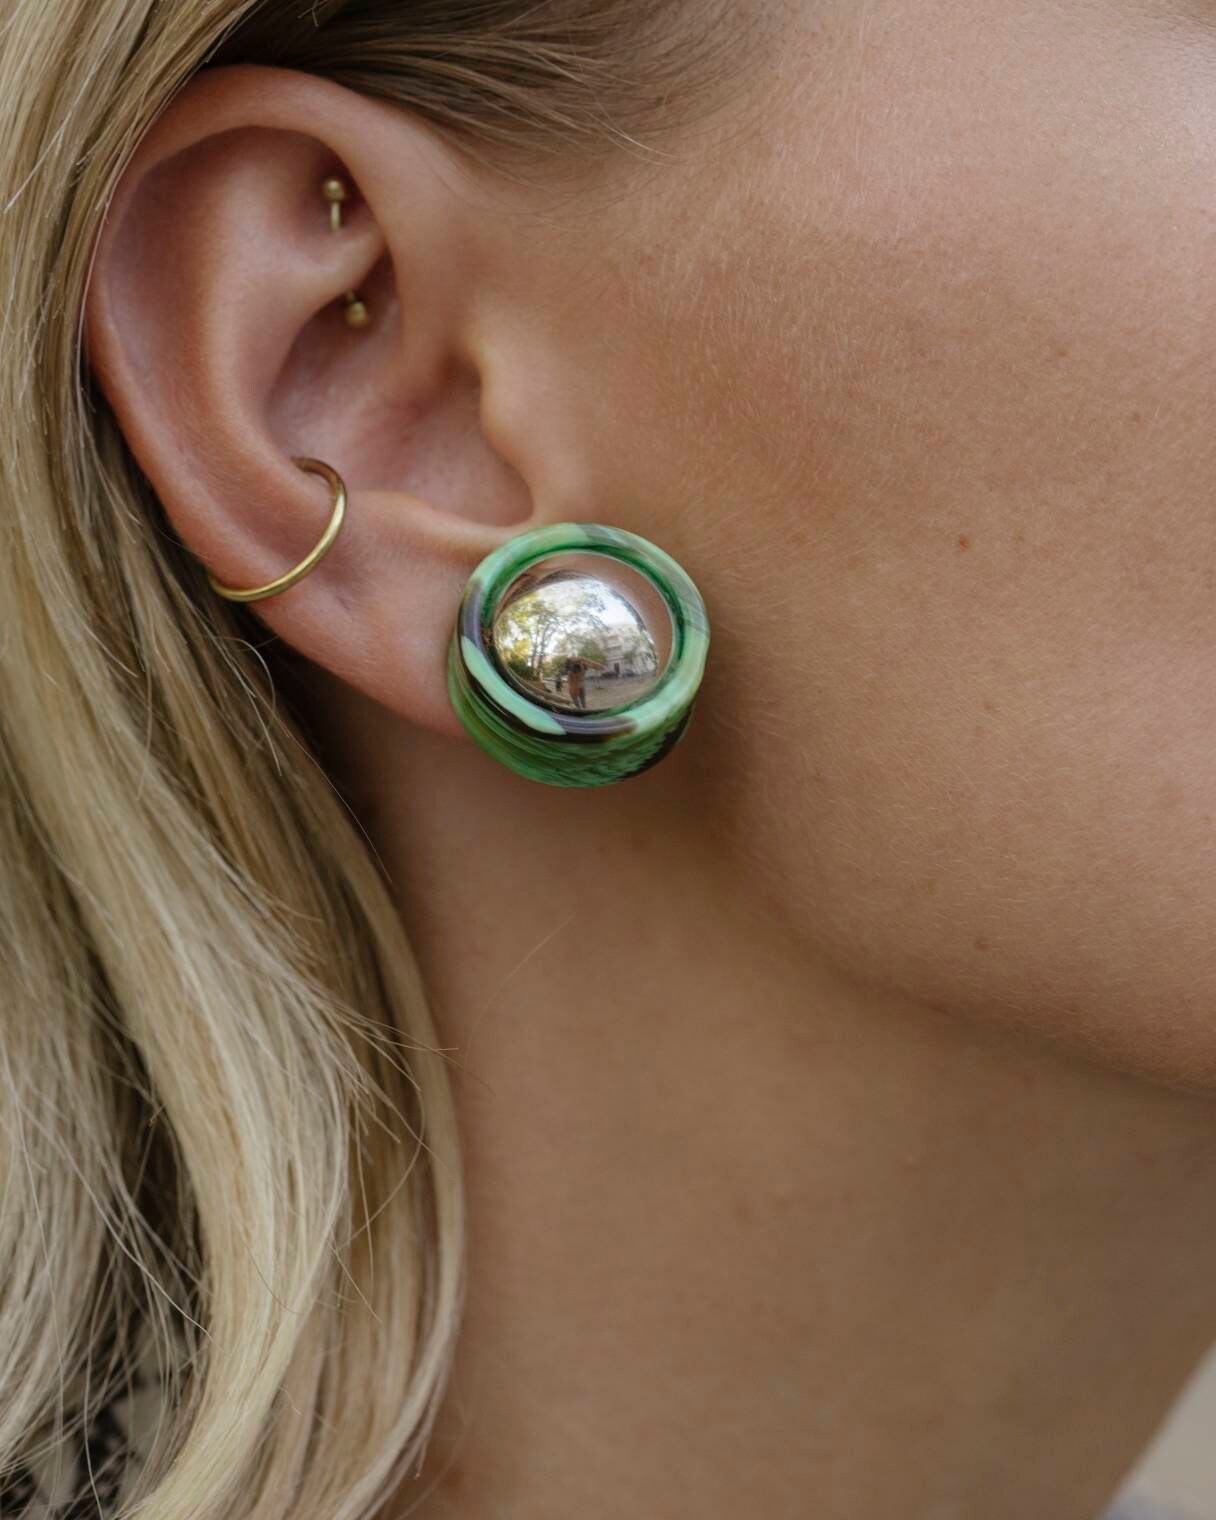 Retro Round Shape Mirror Earrings Clips Green Marble Earrings 